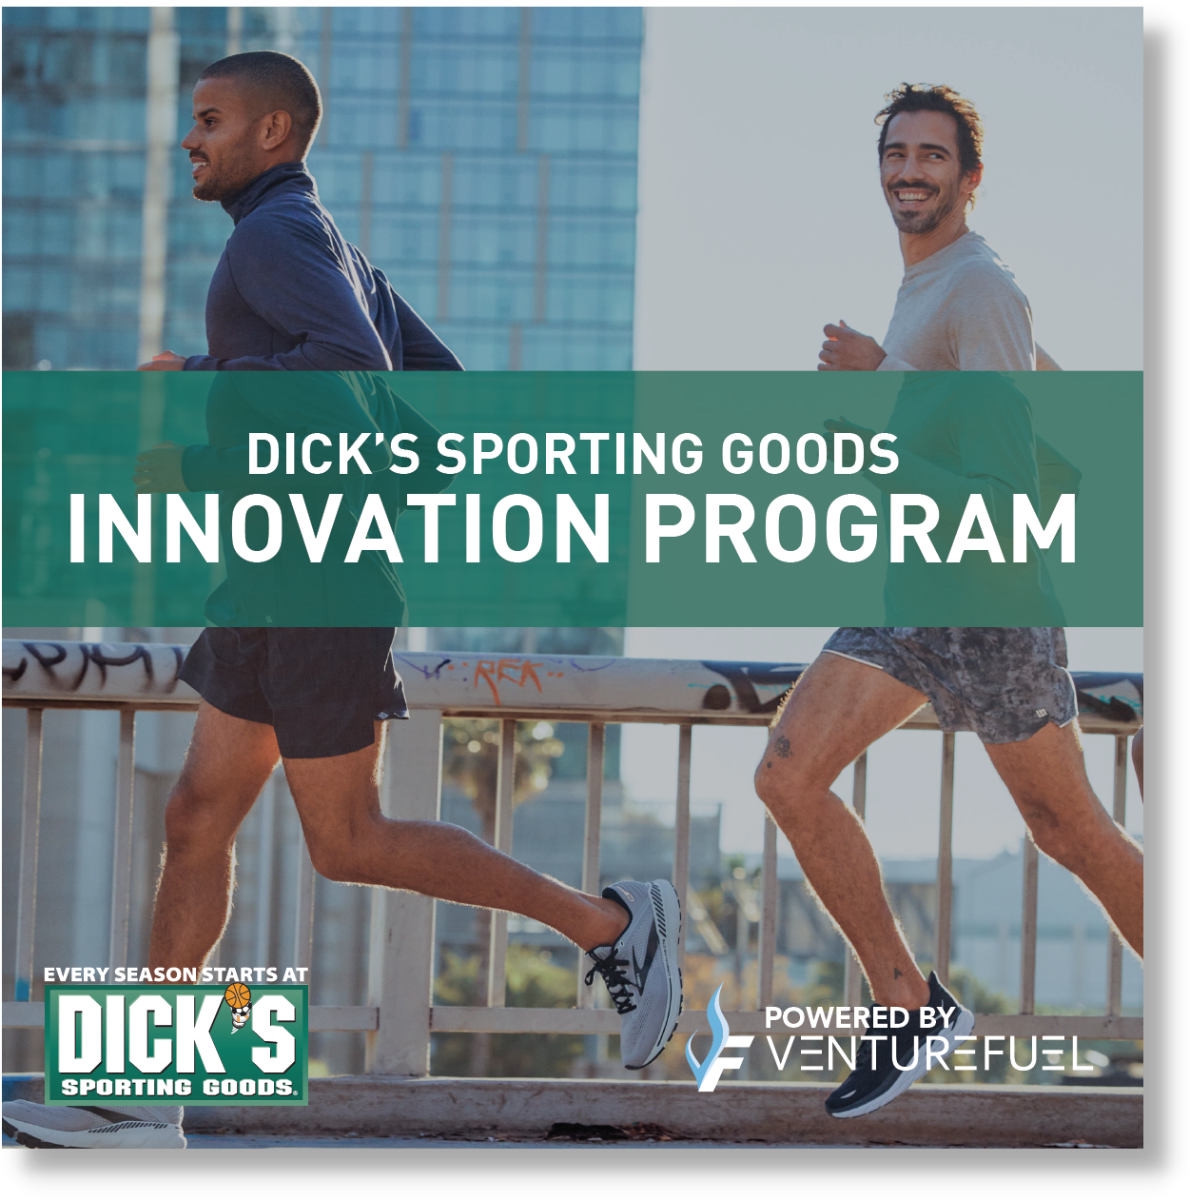 DICK'S SPORTING GOODS INNOVATION PROGRAM